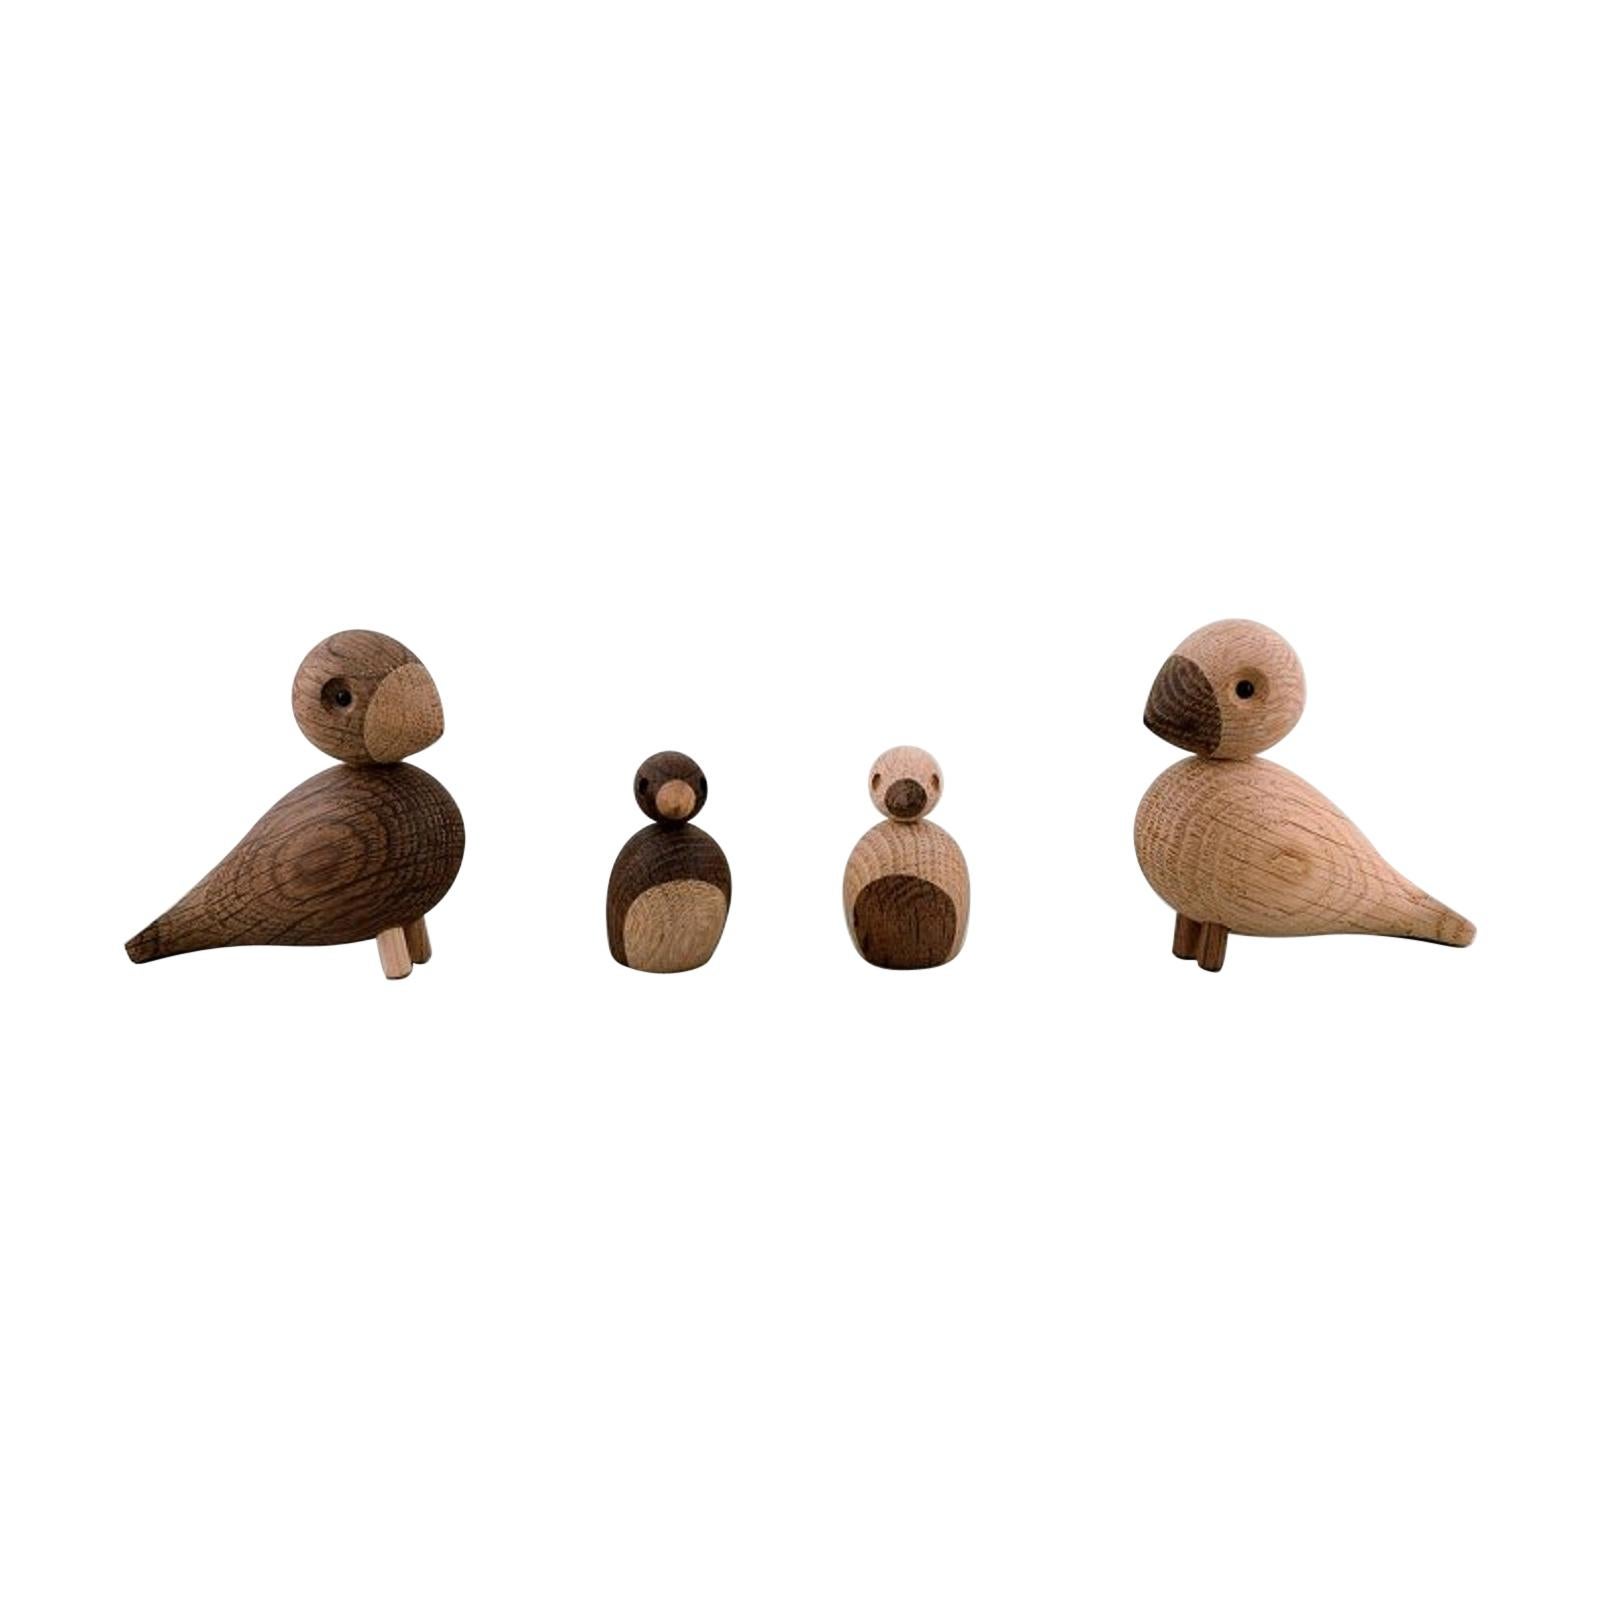 Kay Bojesen, Denmark, Four Wooden Birds, Danish Design, 20th-21st Century